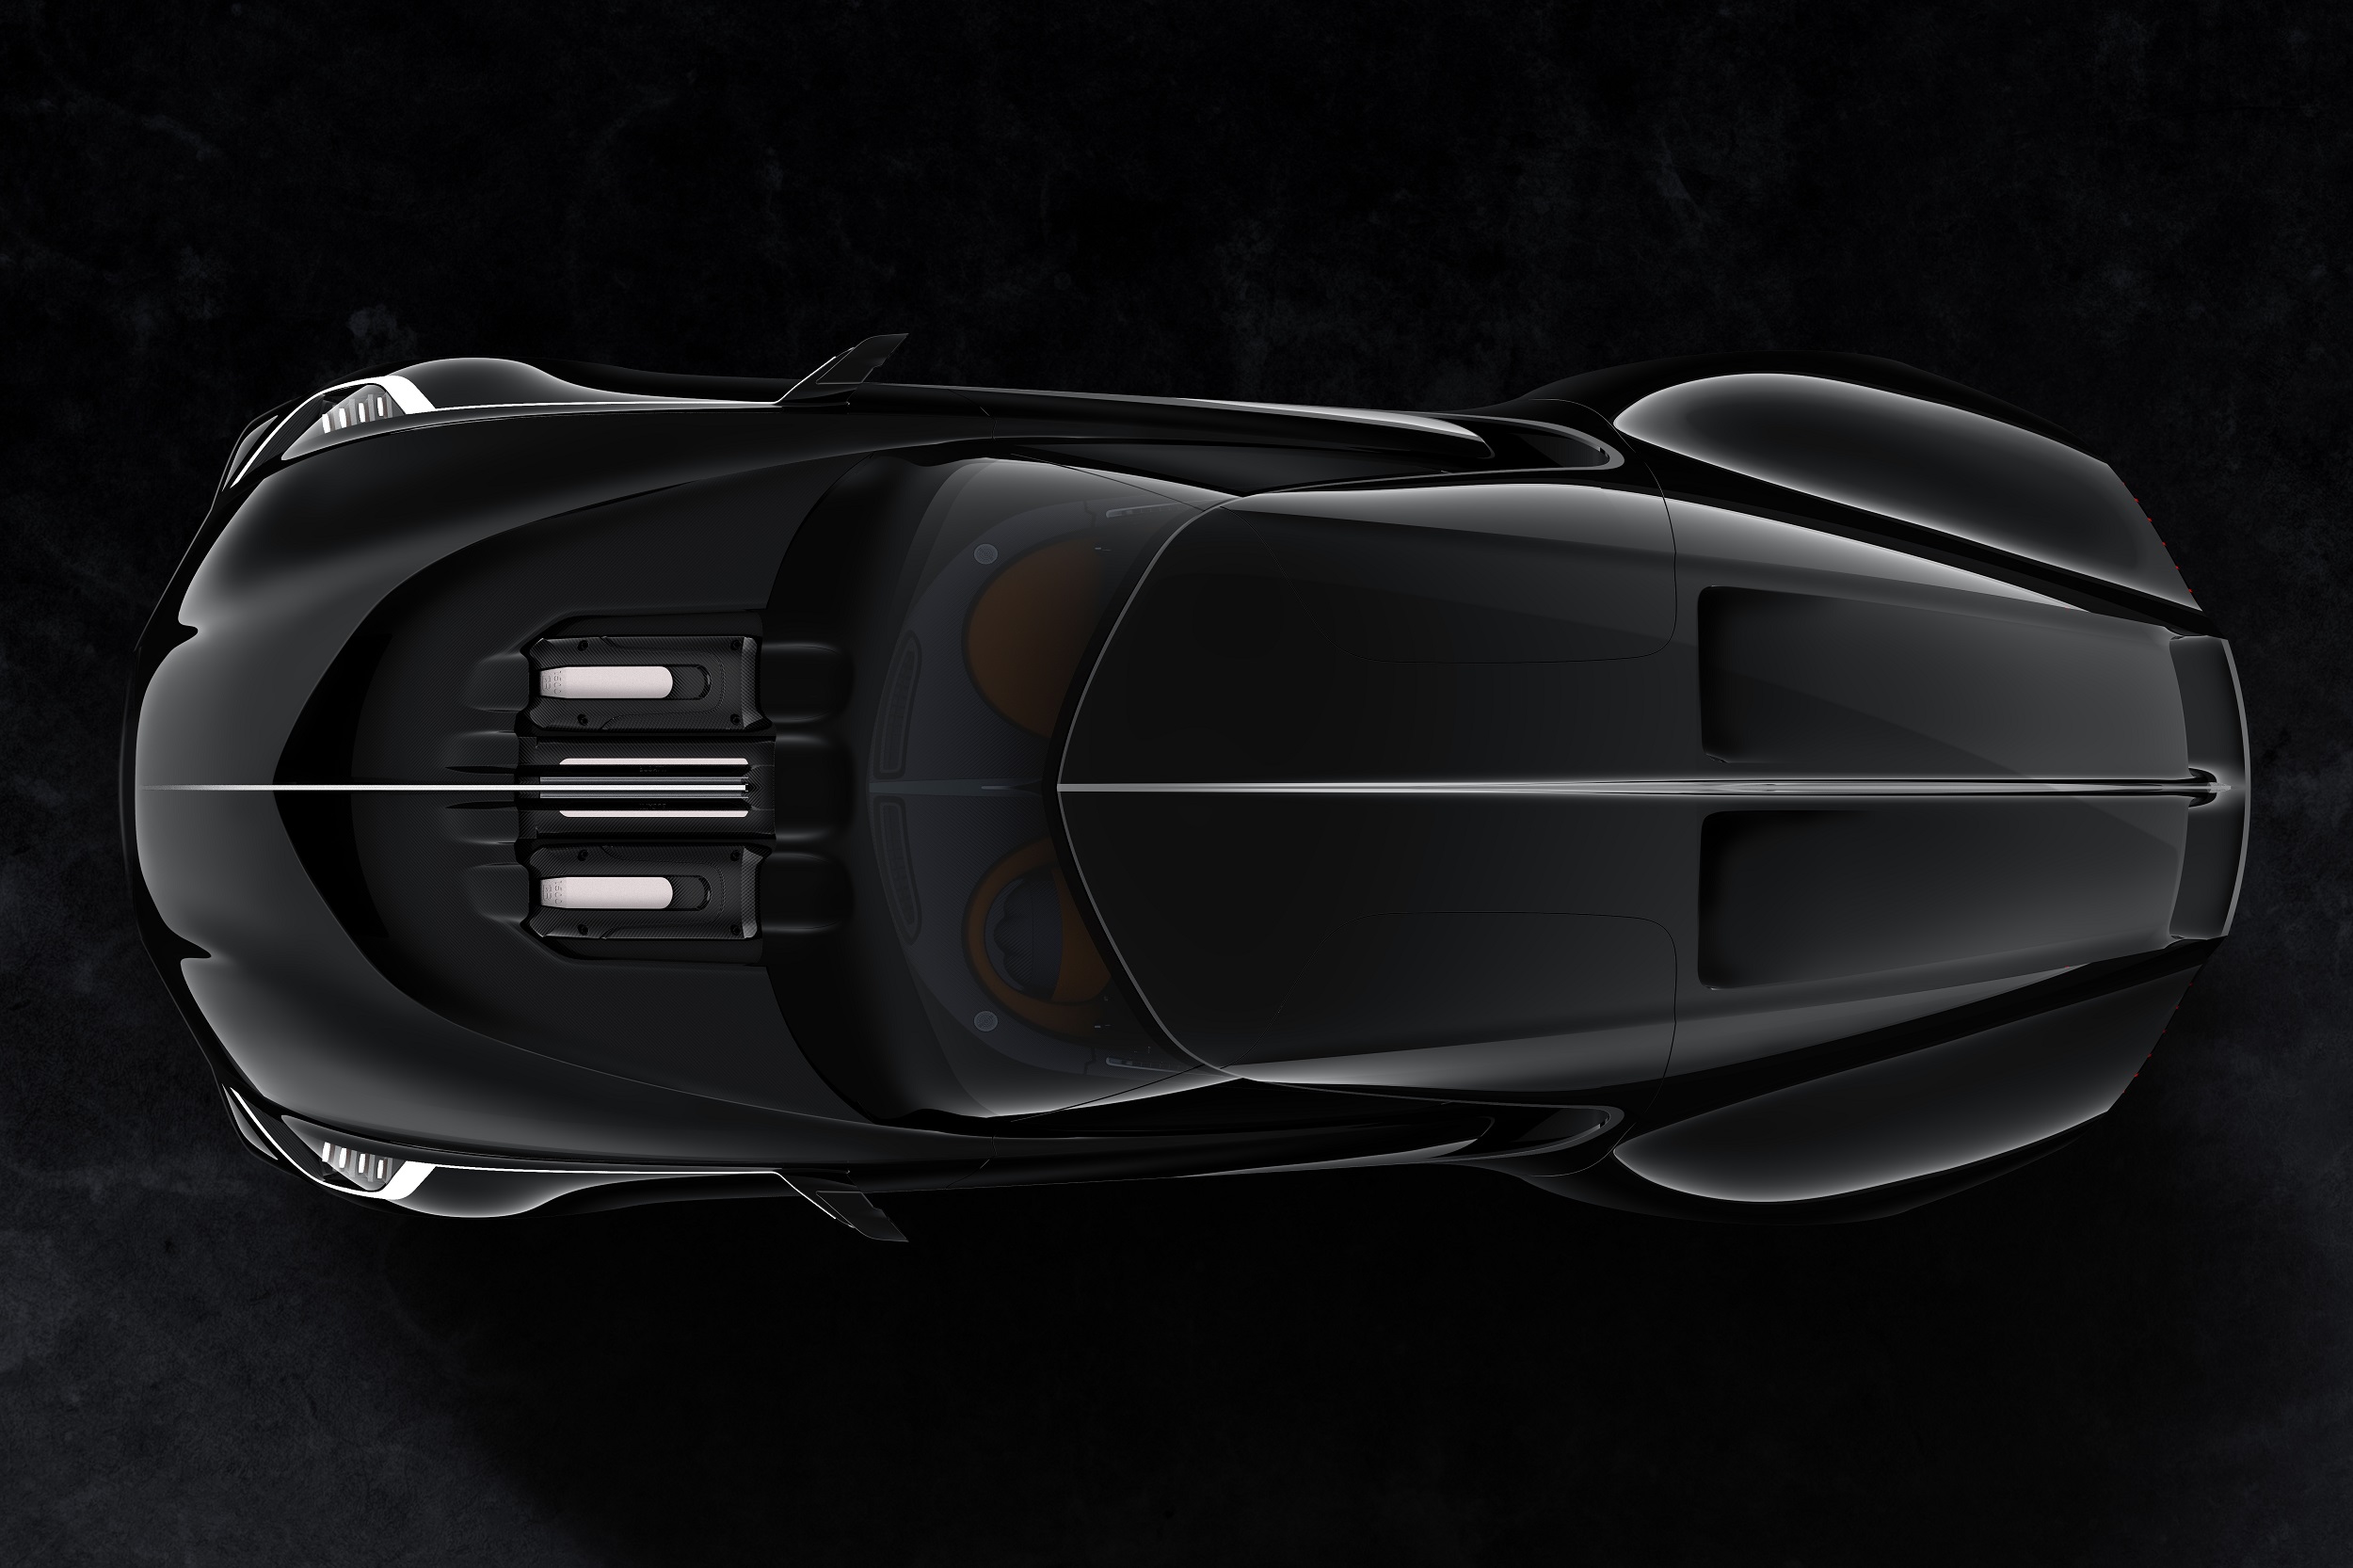 Bugatti GT “Rembrandt” W16 Coupe, 2015